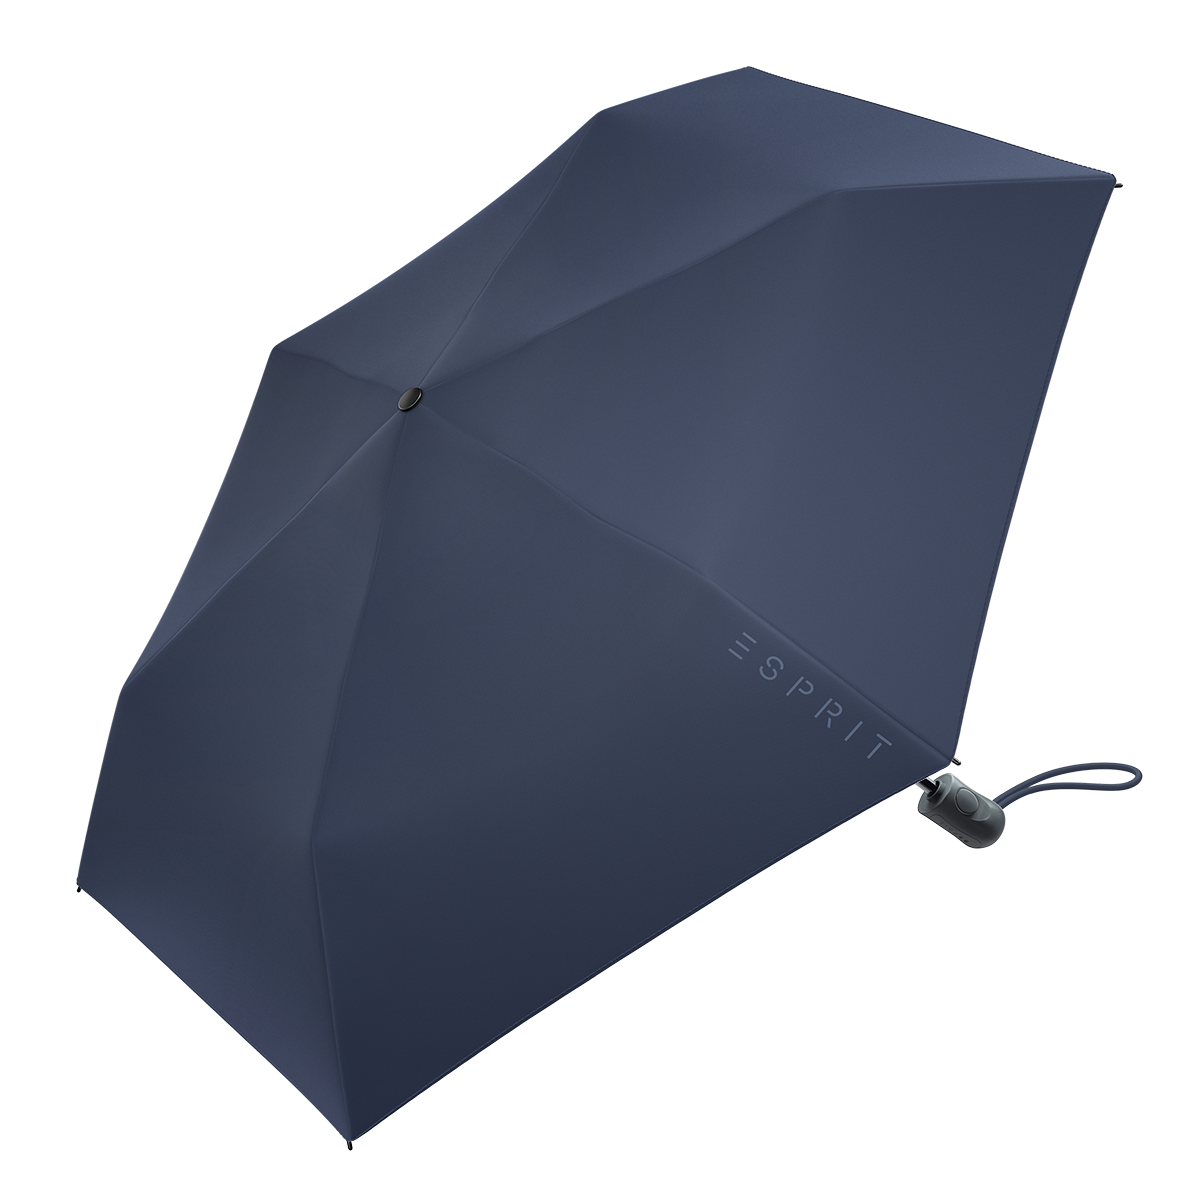 Easymatic Slimline sailo Taschenschirm Regenschirm Esprit nachhaltiger